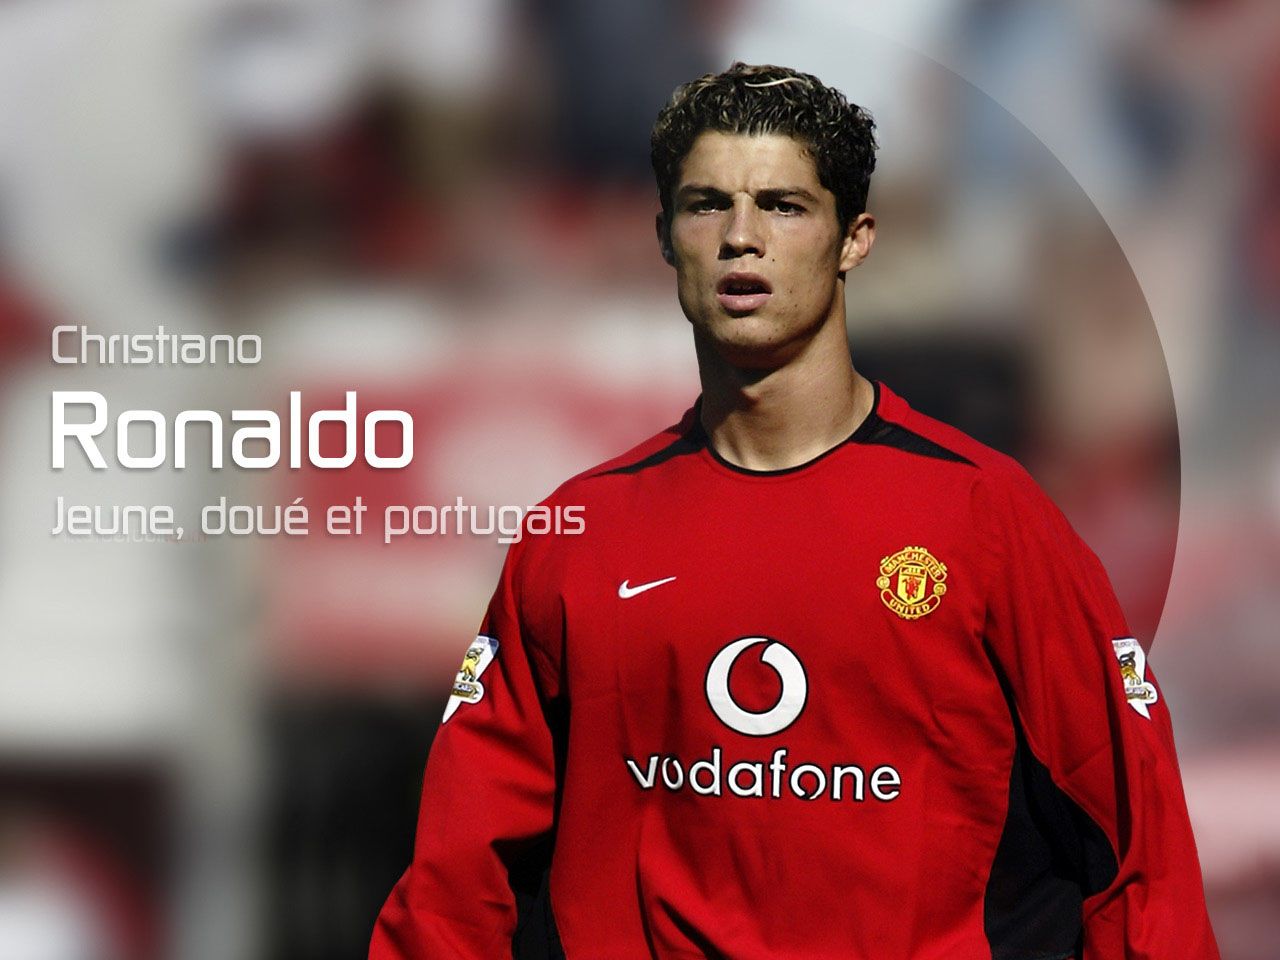 Cristiano ronaldo: Cristiano ronaldo manchester united HD wallpaper wallpaper Manchester United